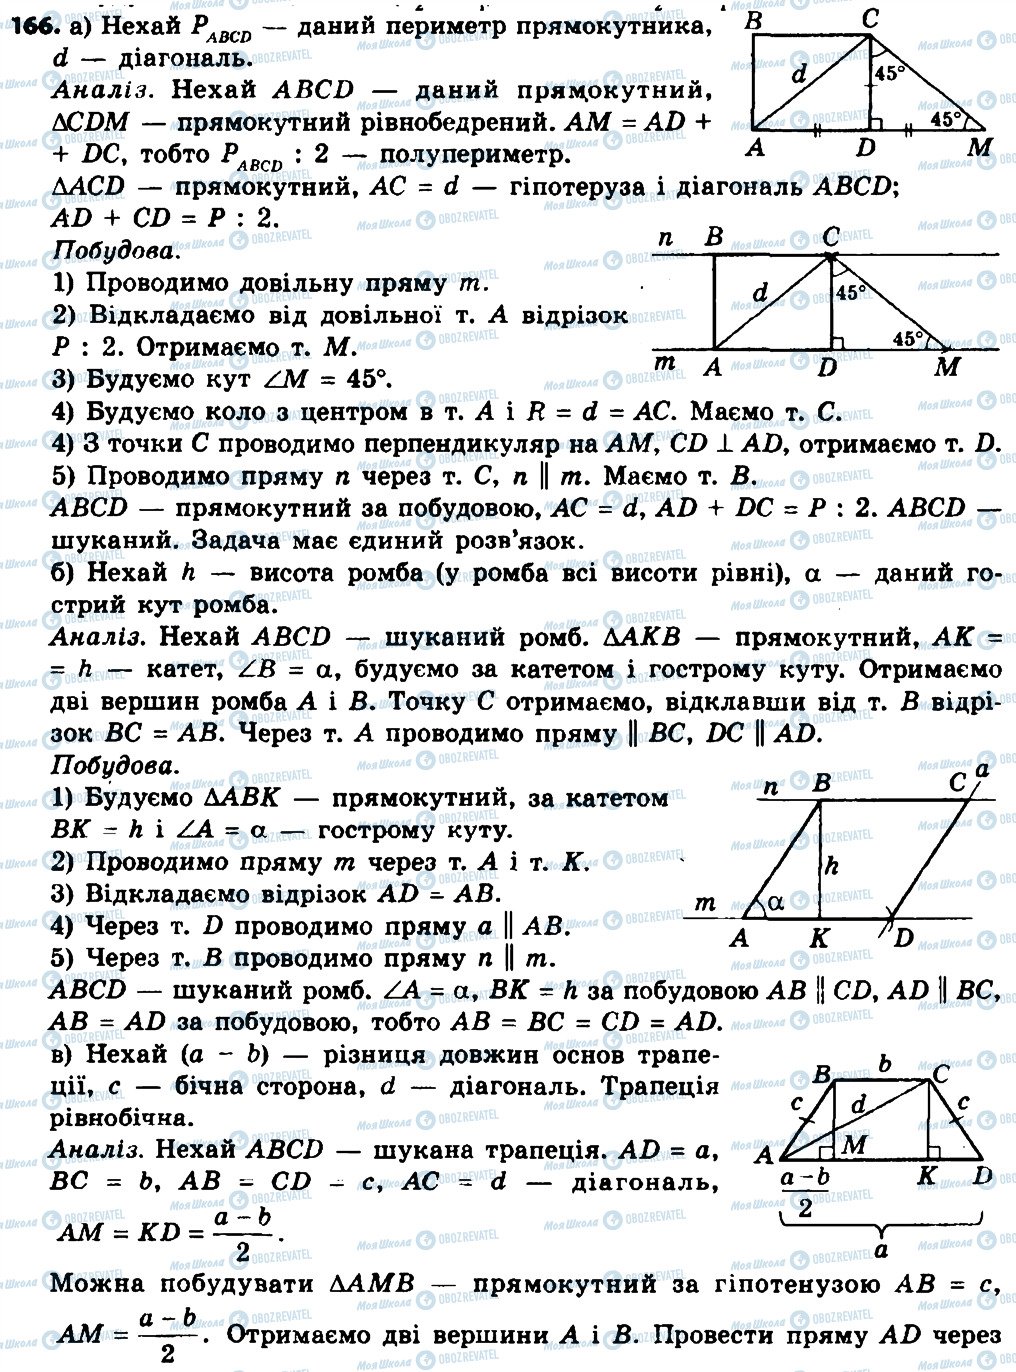 ГДЗ Геометрия 8 класс страница 166